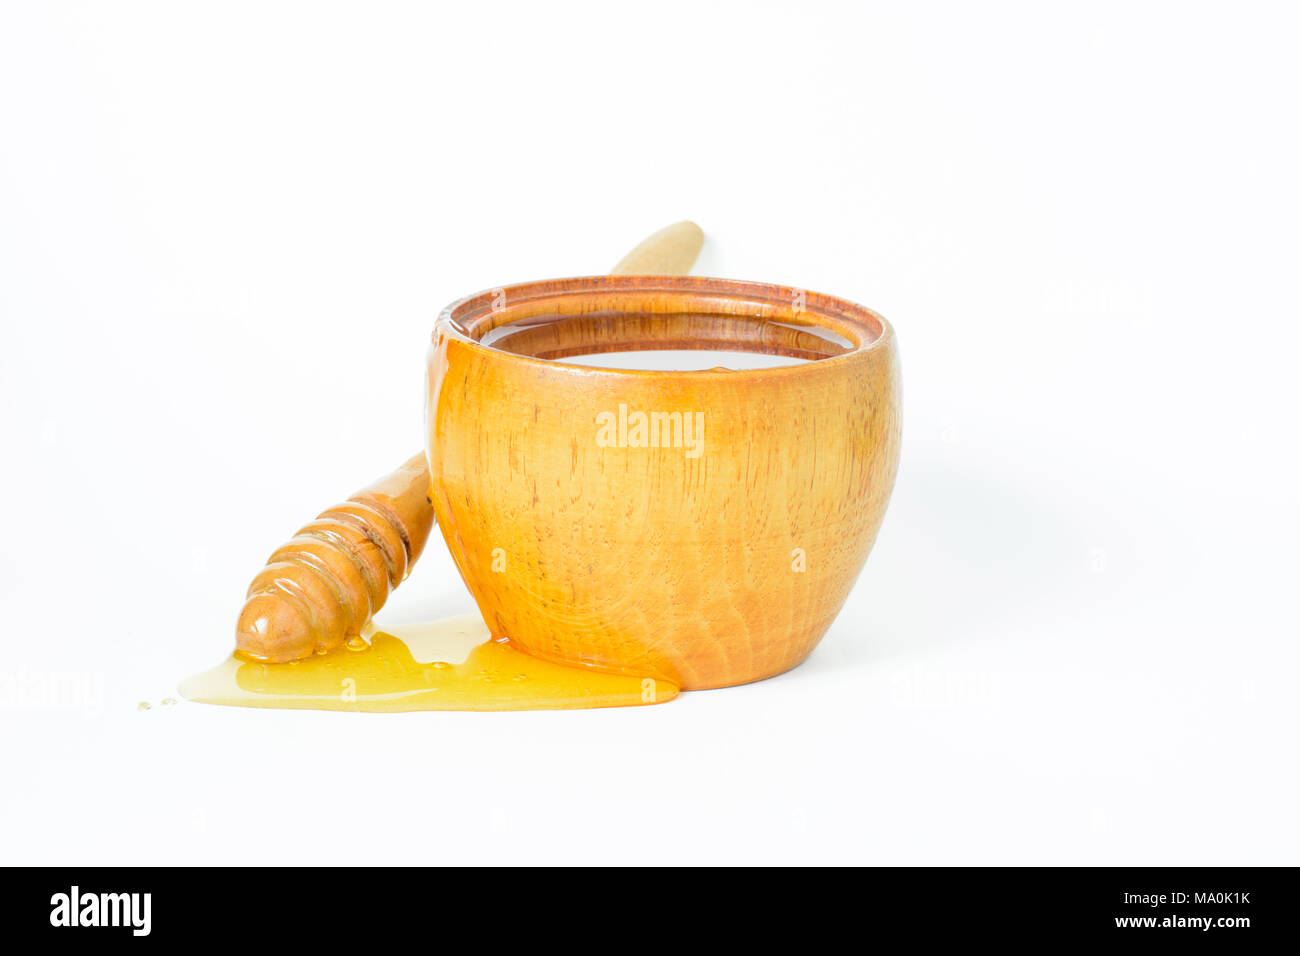 La miel en un recipiente de madera y un penetrador de miel. Foto de stock